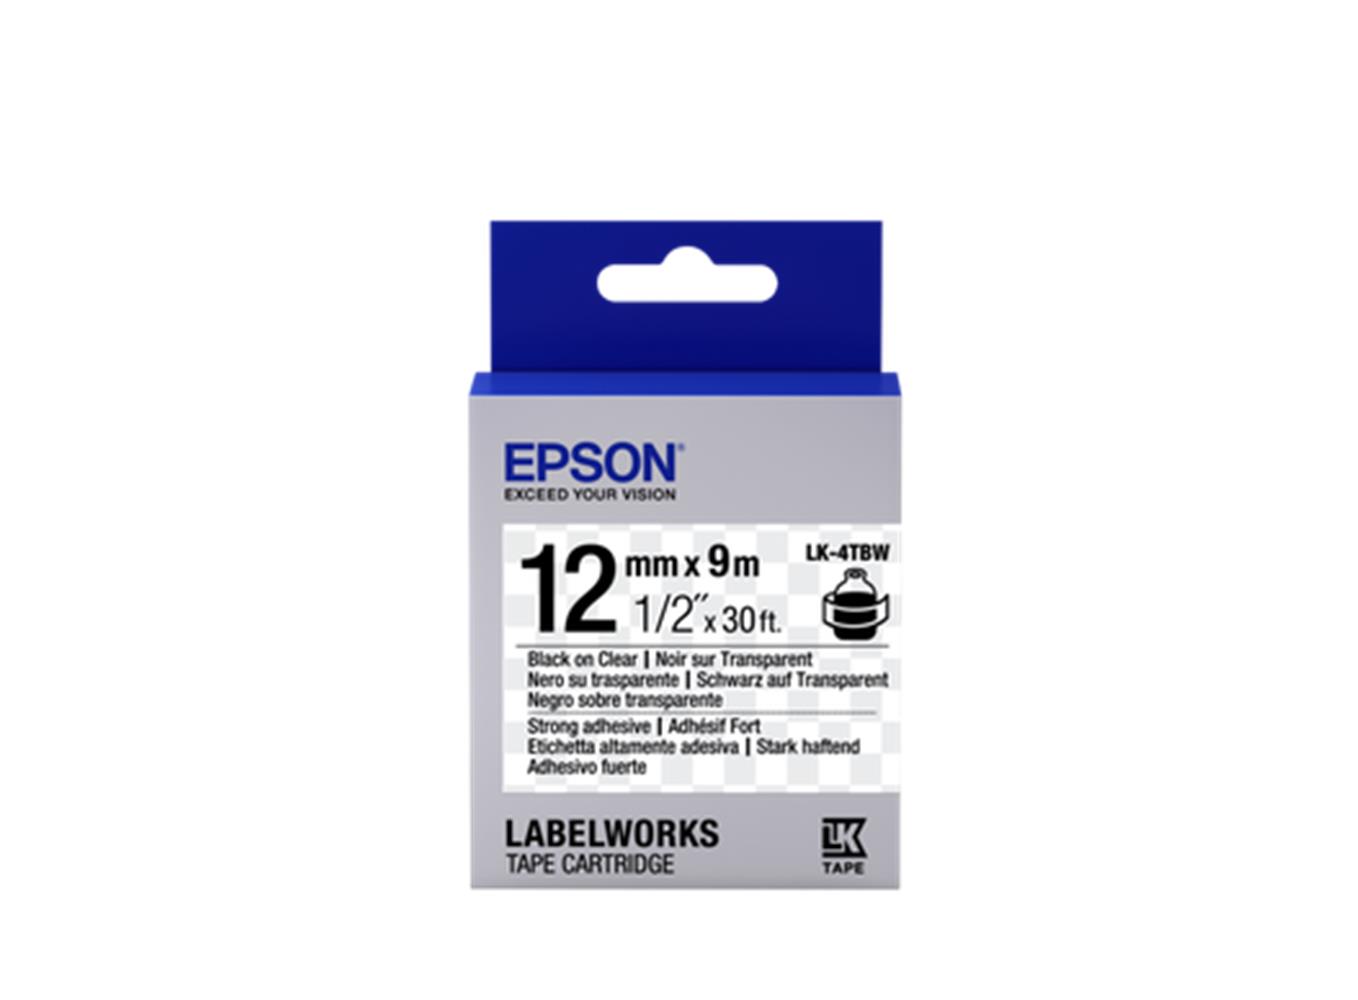 EPSON LK-4TBW STRONG EFFAF UZERI SIYAH 12MM 9MT